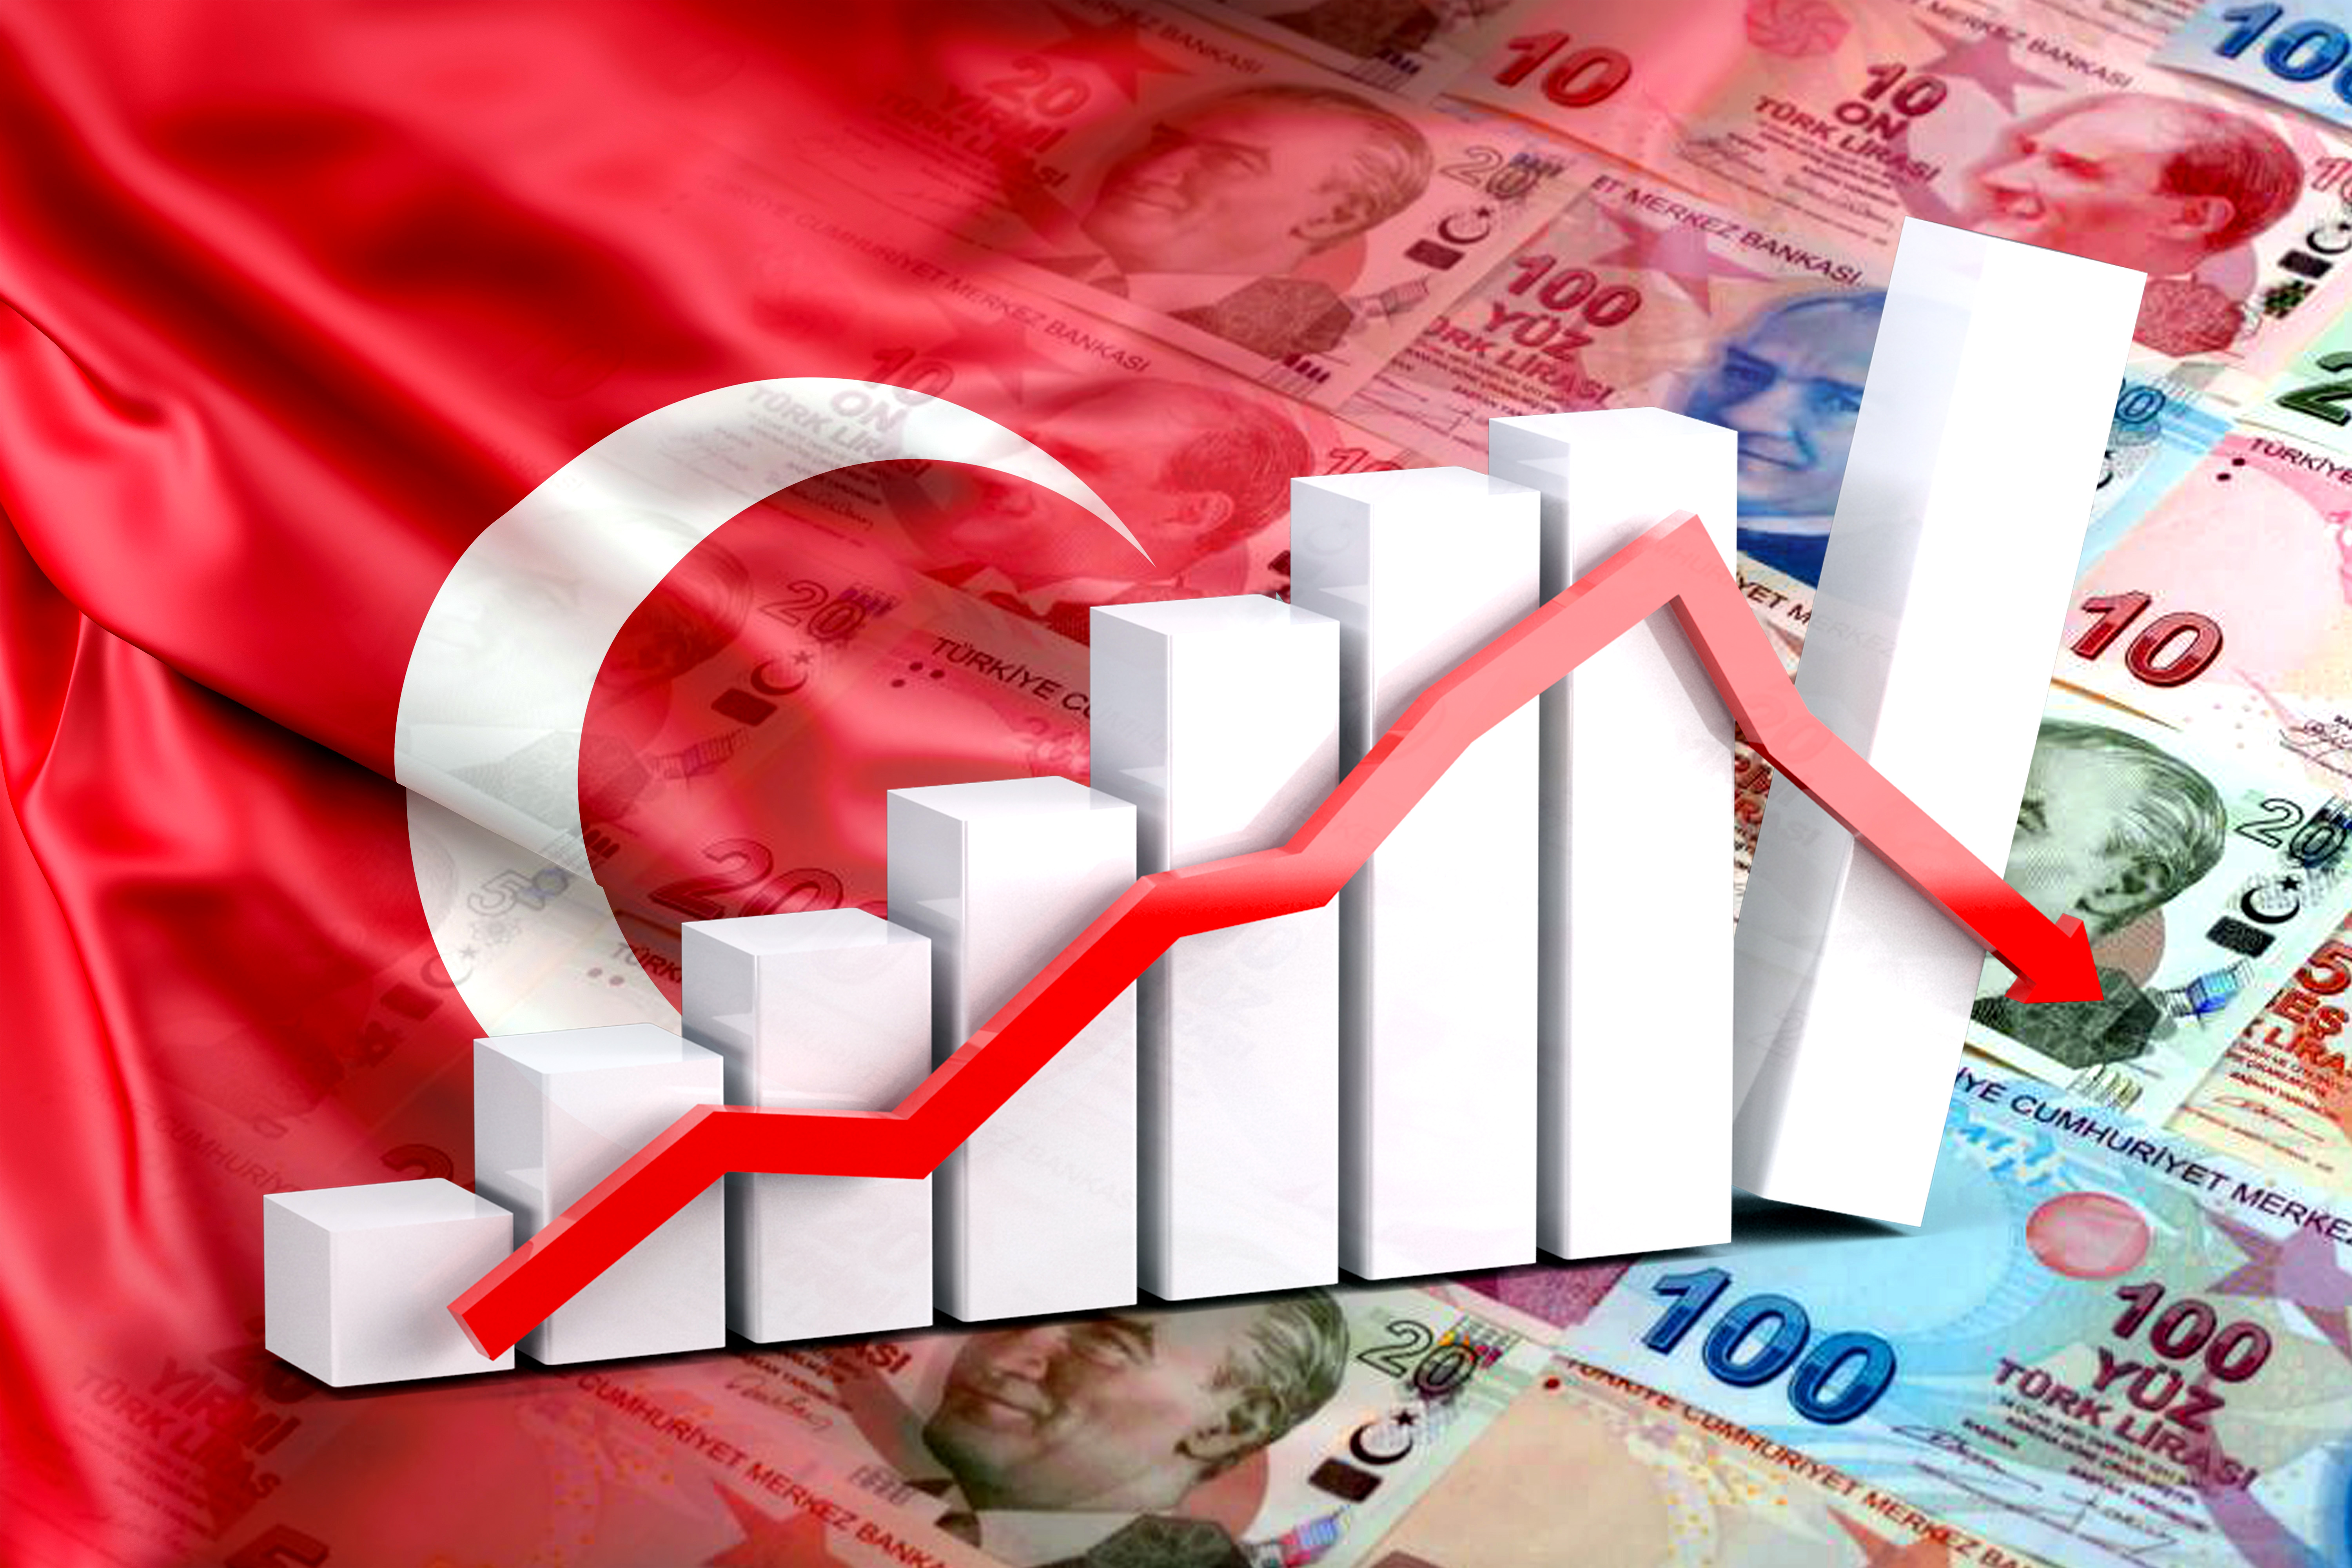 العملة التركية (الليرة التركية) تنهي هذا العام كثاني أسوأ عملات الأسواق الناشئة أداءً، بعد البيزو الأرجنتيني؛ حيث إنها تأثرت بالتضخم بشكل كبير، مما جعلها تشهد انخفاضاً حاداً أمام الدولار بنسبة 36% على مدار العام 2023م.